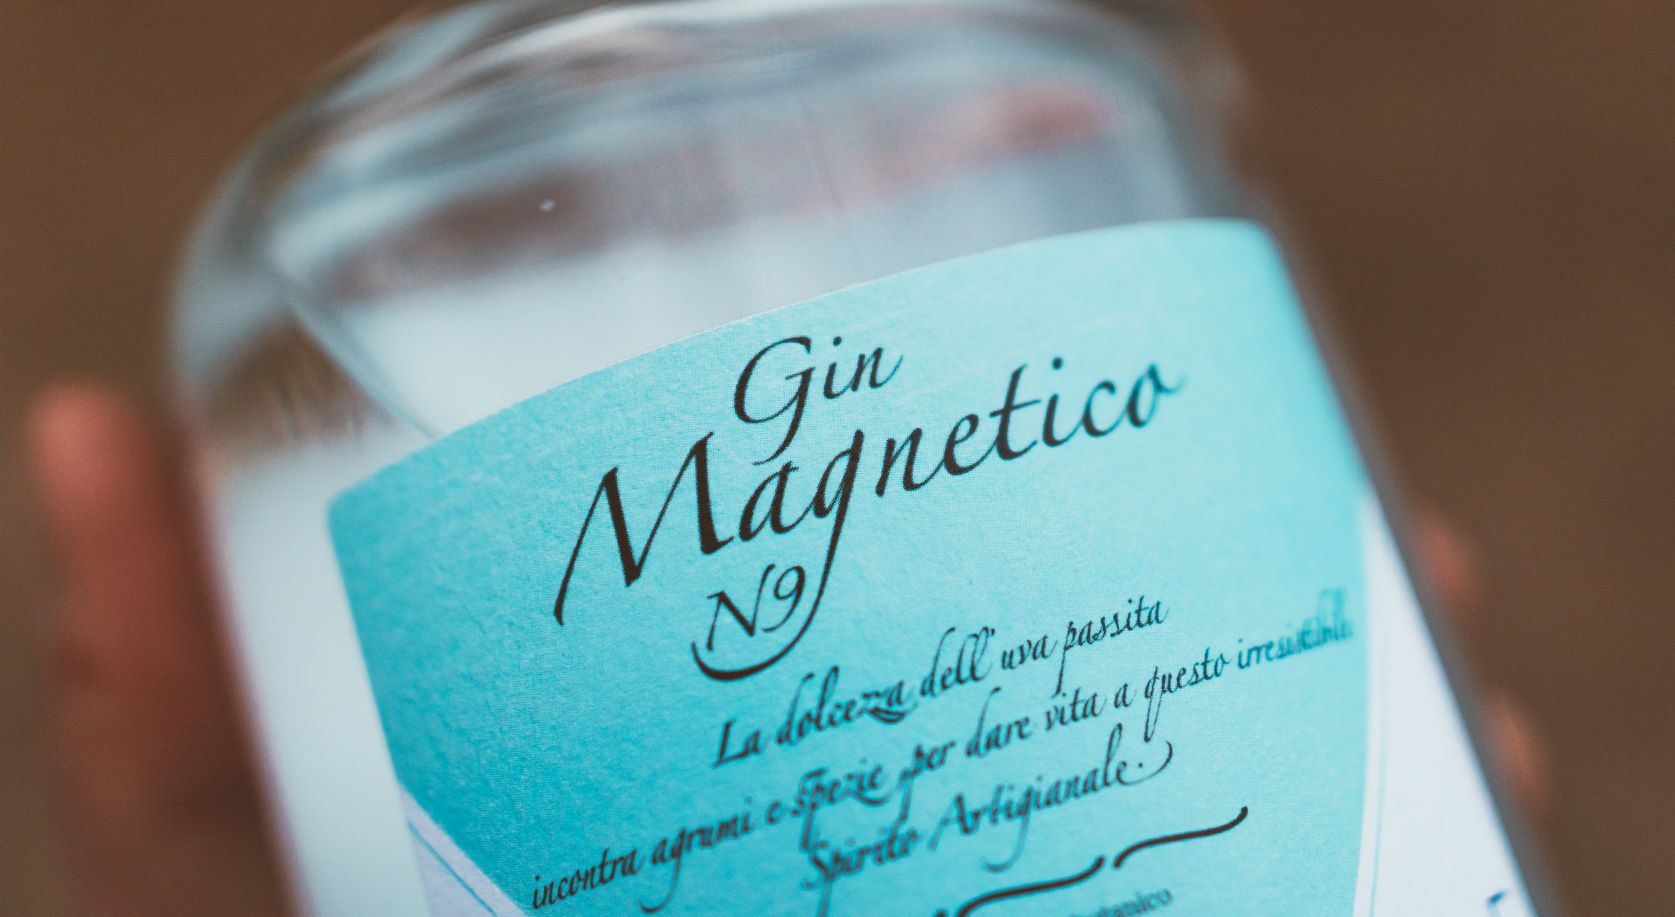 gin magnetico n9 spirito artigianale